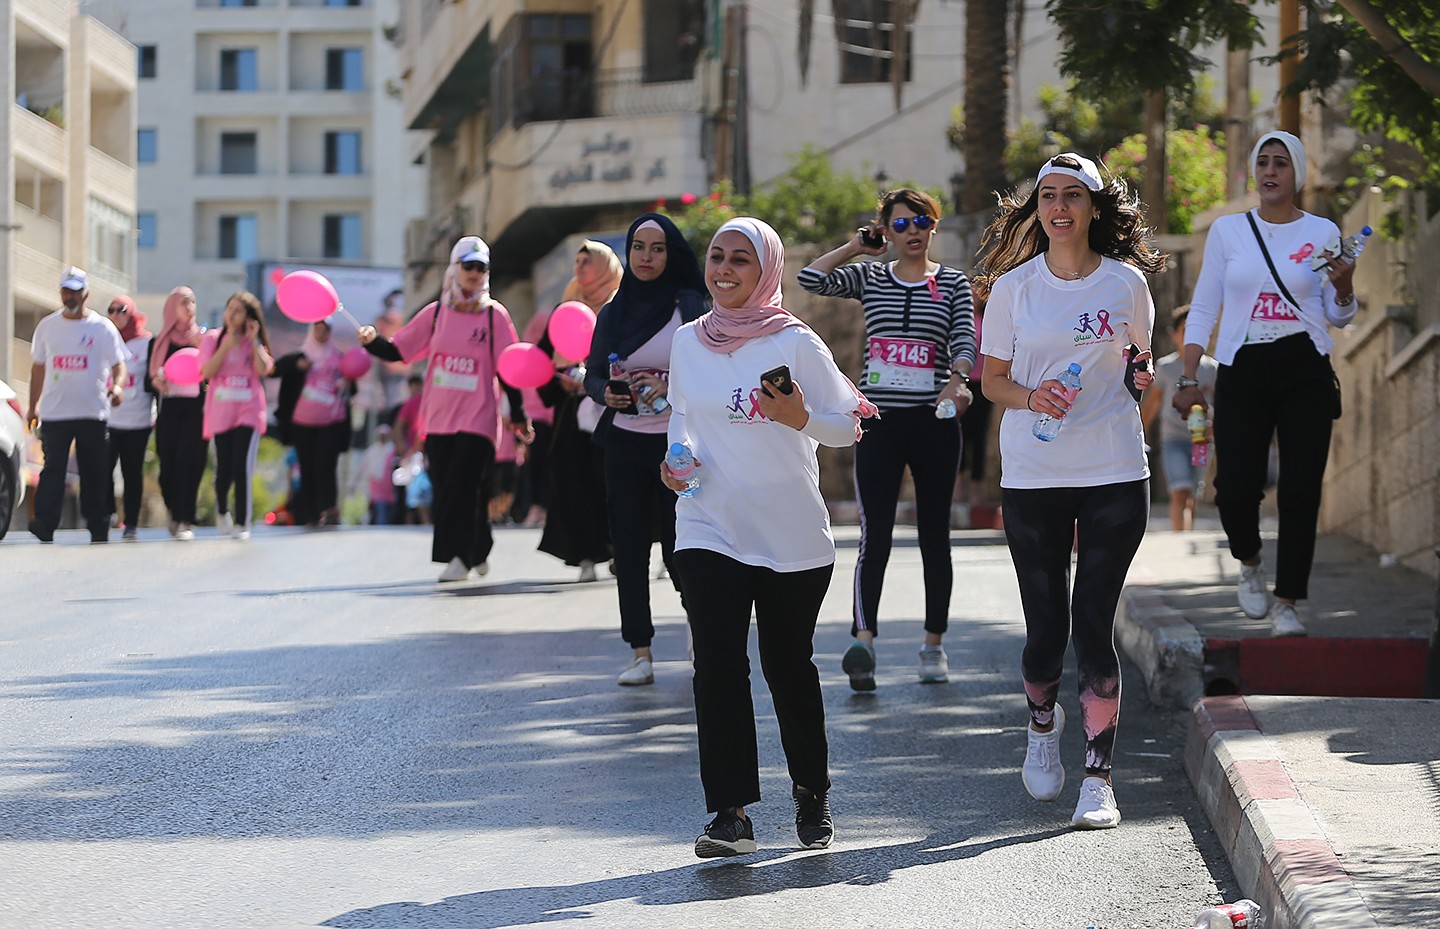 سباق اليوم الوردي النسائي رام الله ‫(38470149)‬ ‫‬.jpg